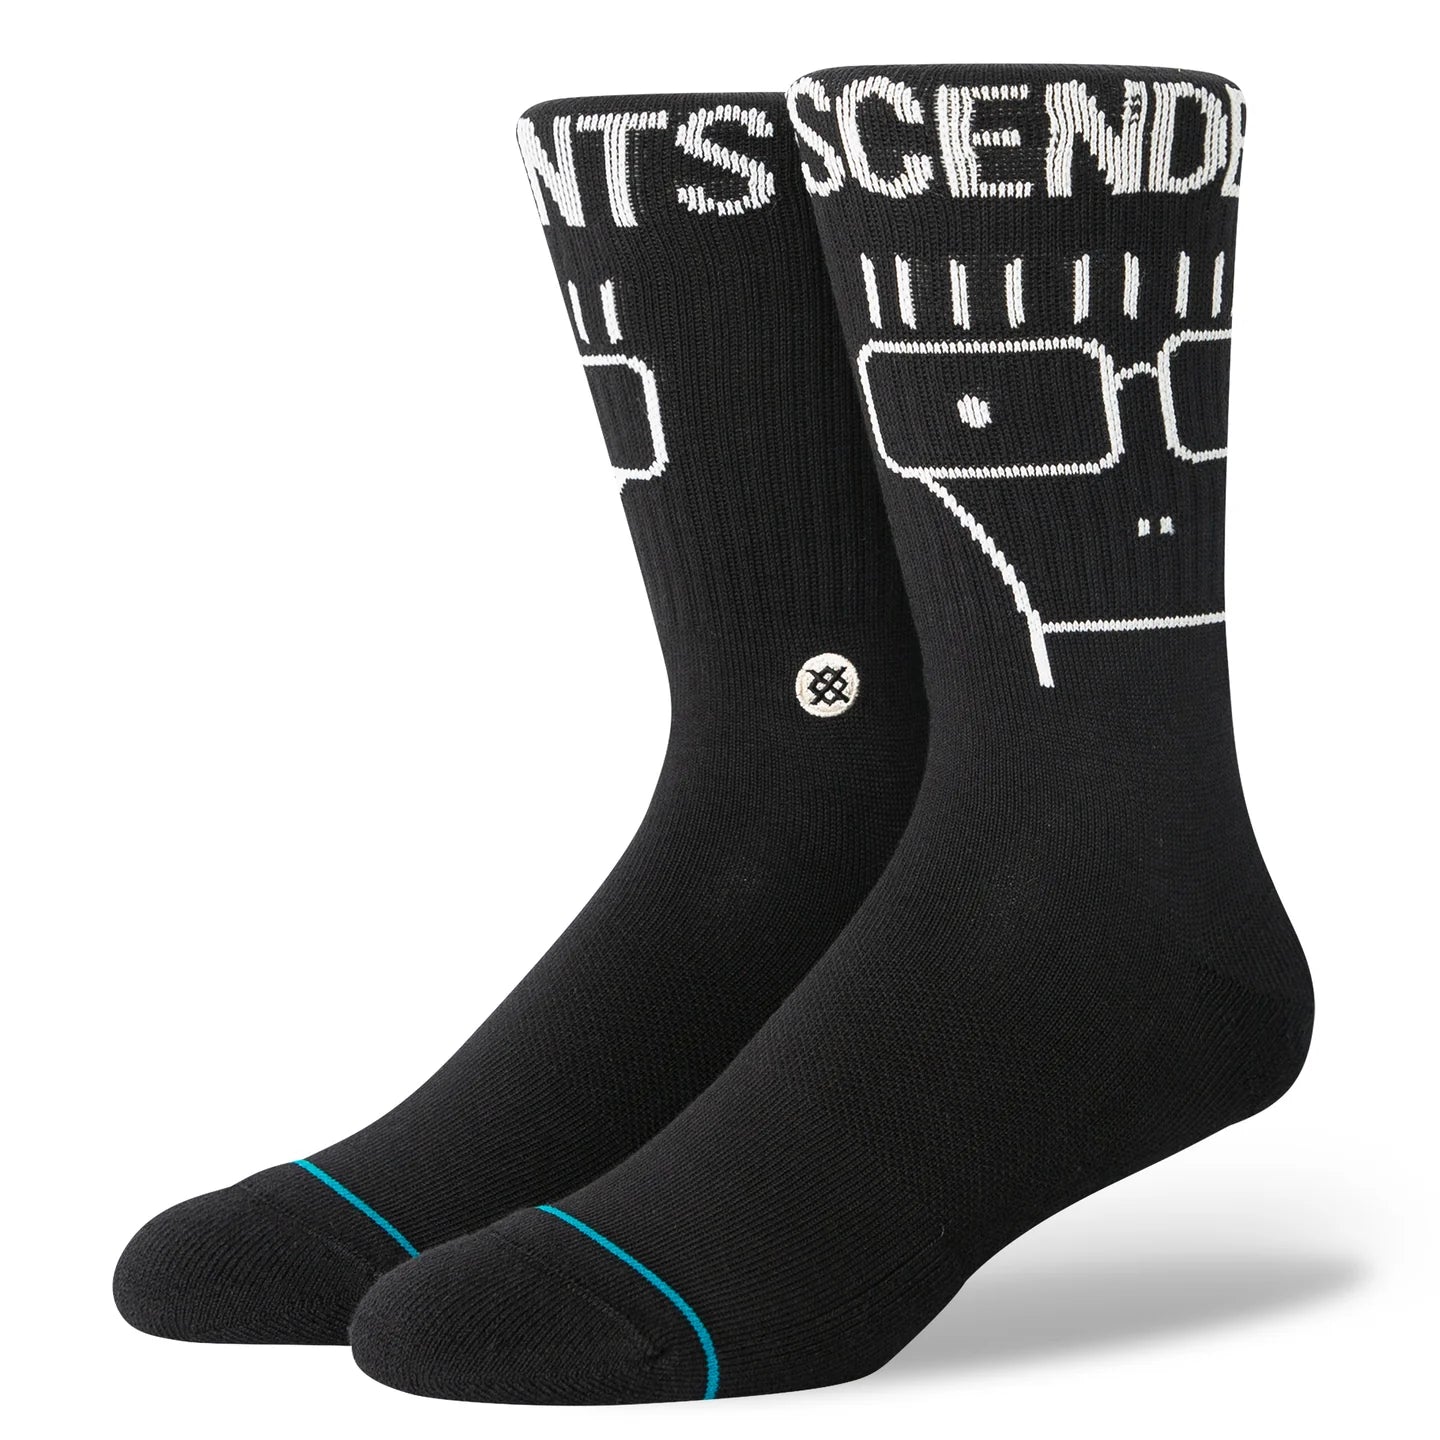 STANCE Descendants X Stance Socks Washed Black Men's Socks Stance 